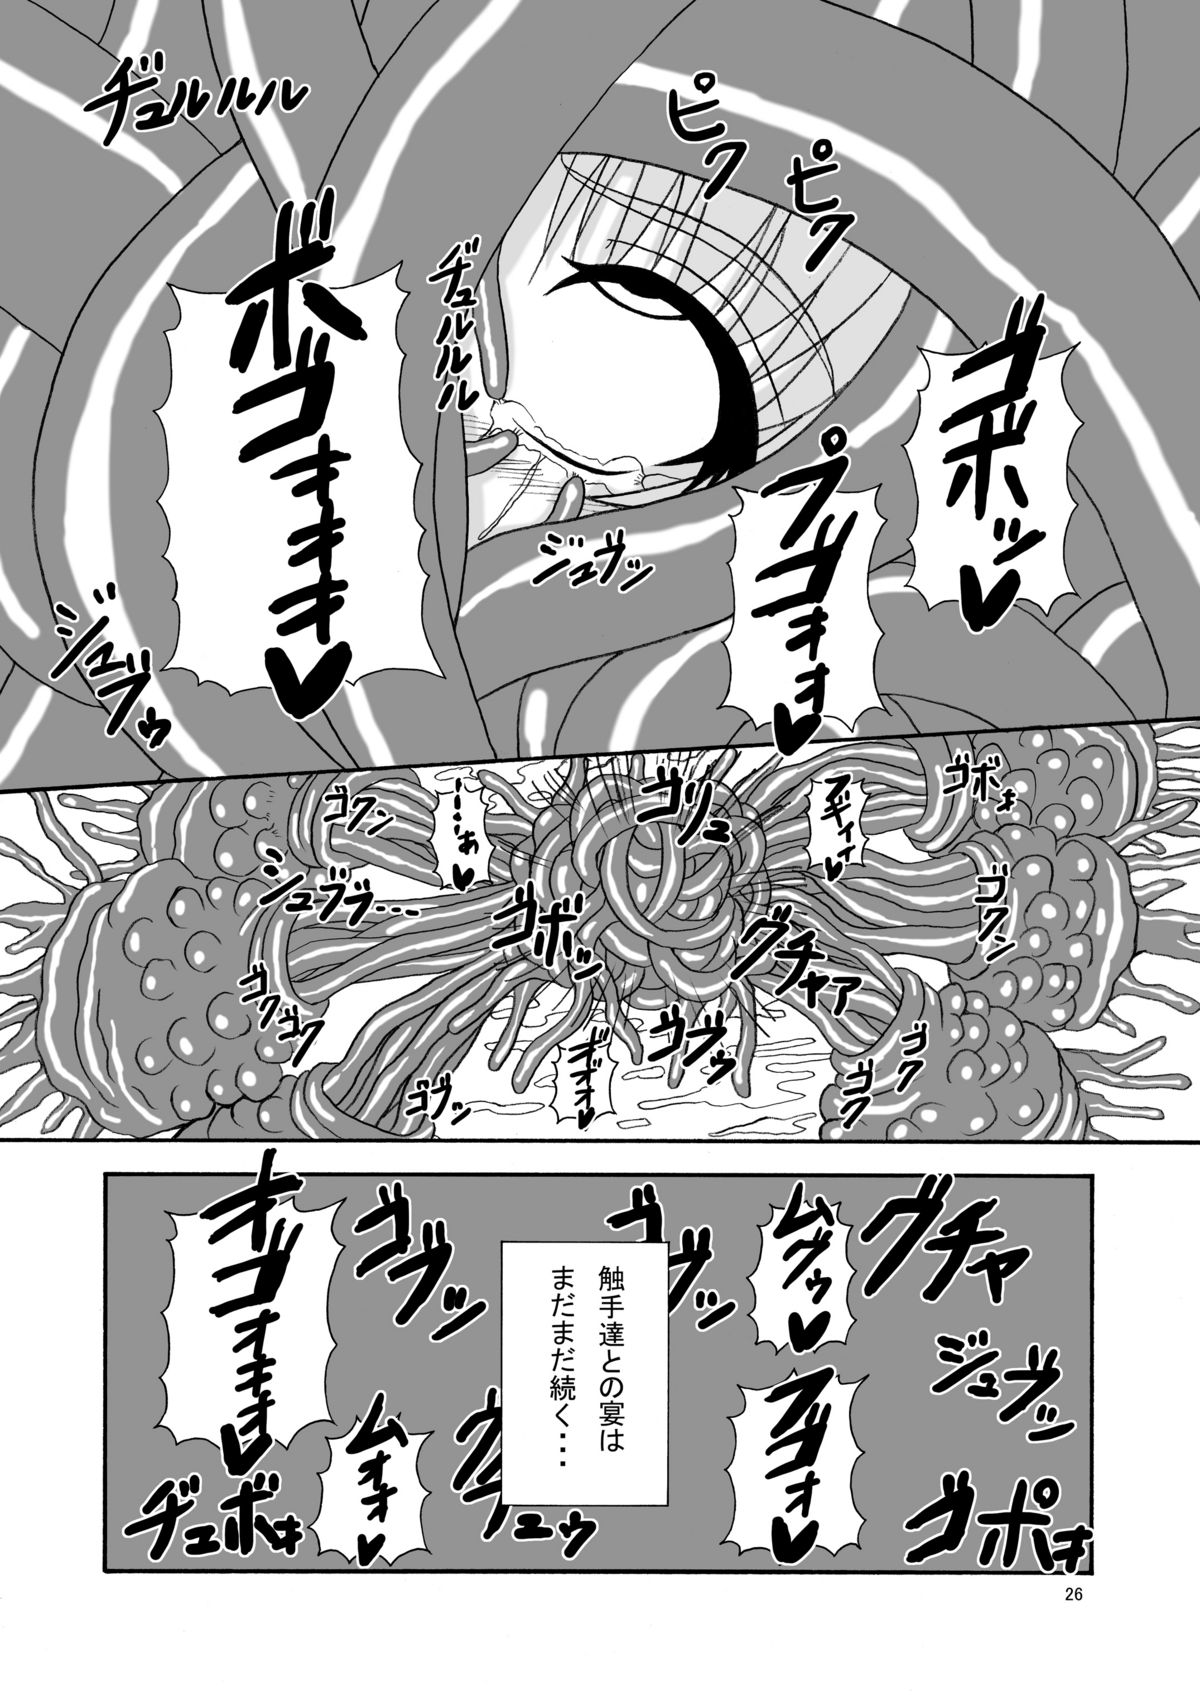 [Pint Size (Tenrai)] Hard Core Blade Ma Sawa Zenshin Kan (Queen's Blade) page 25 full